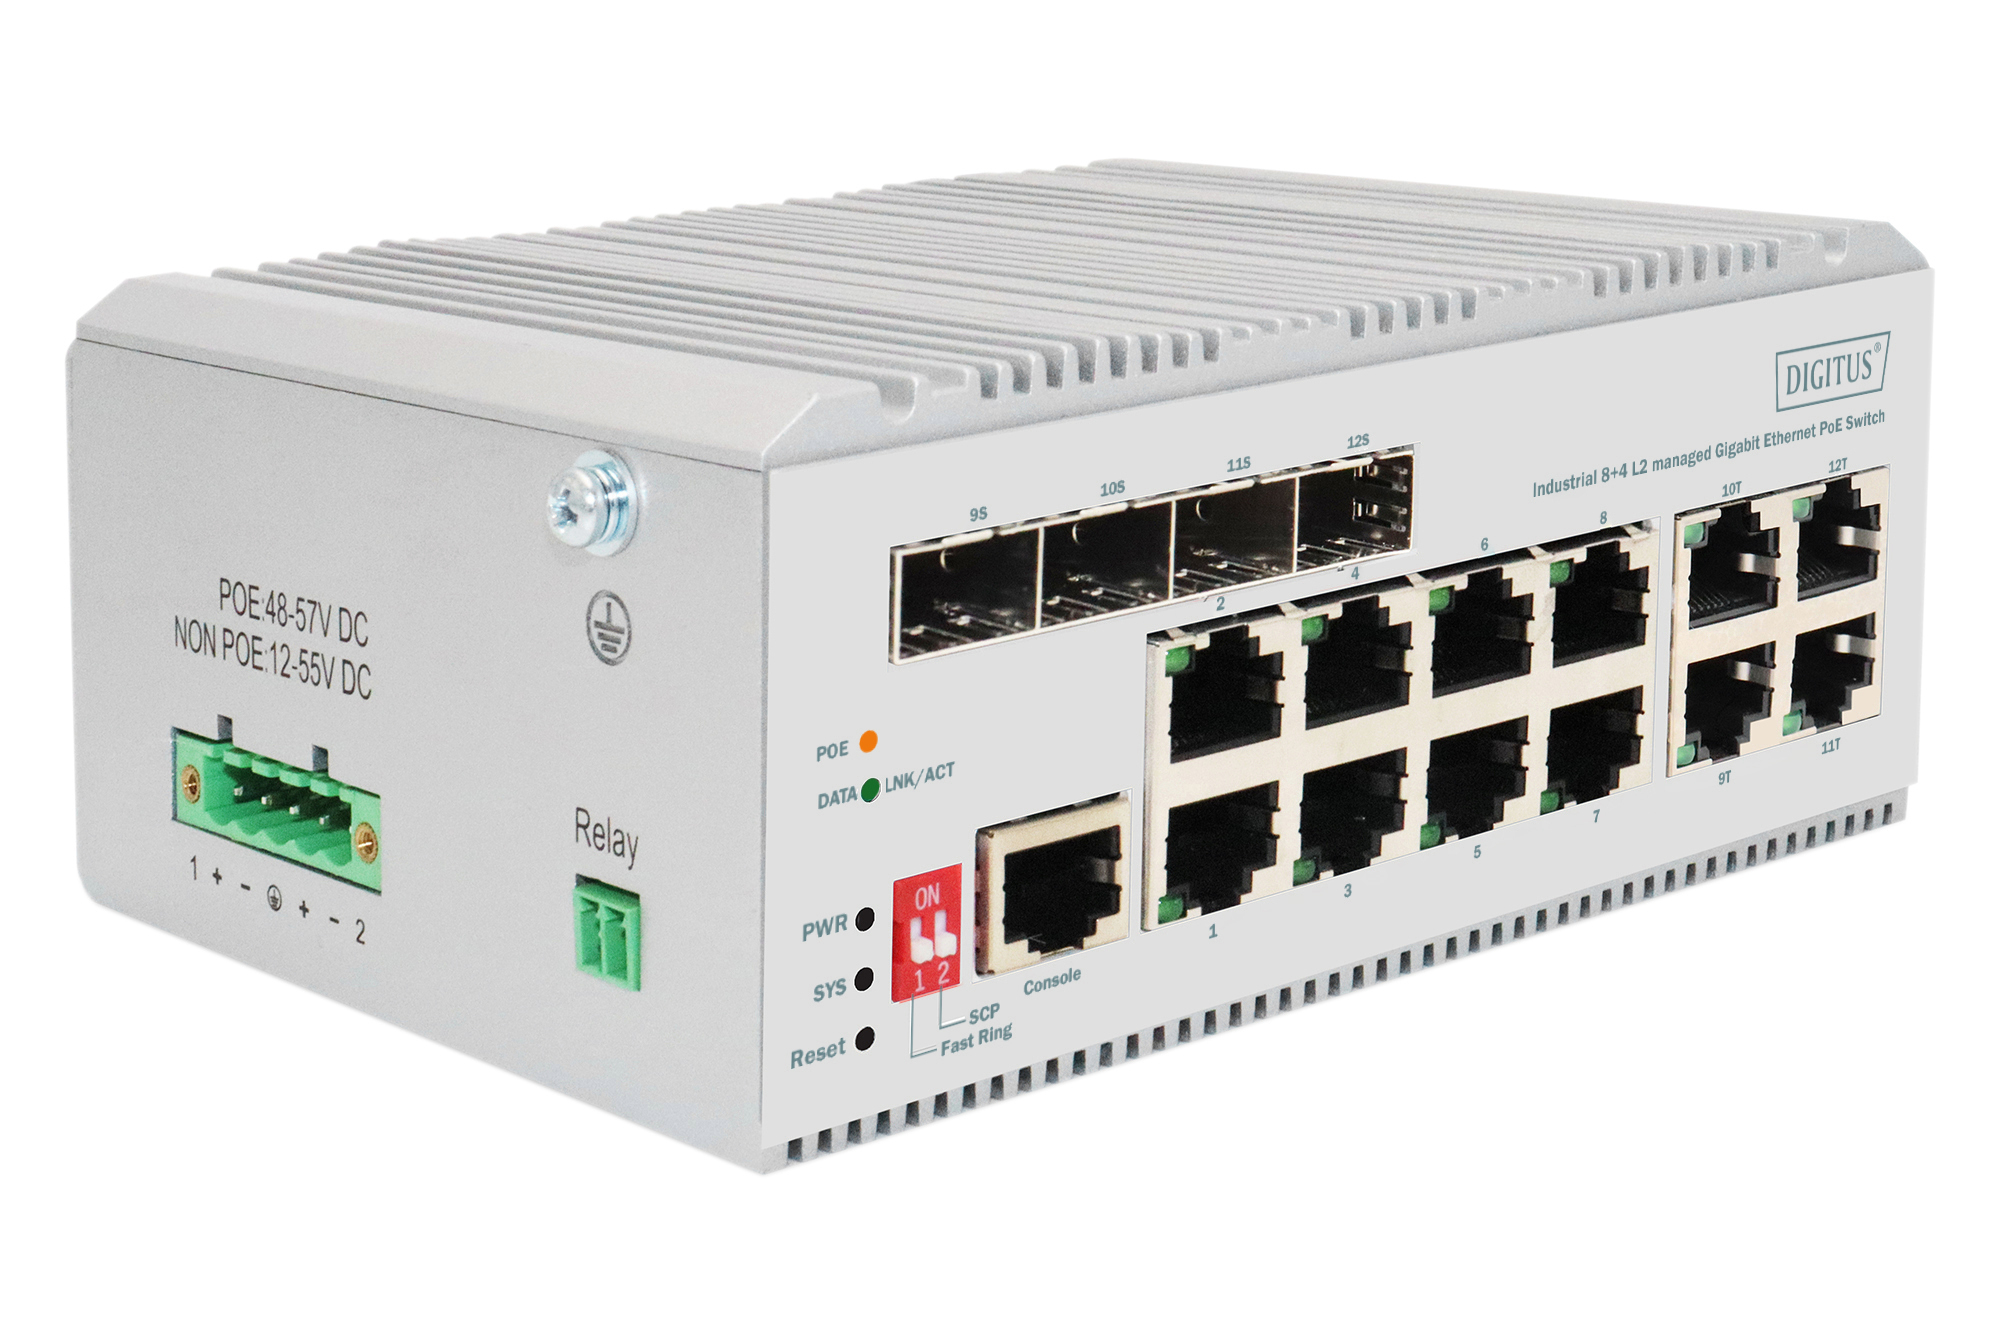 DN-651139 DIGITUS 8 port Gigabit Ethernet network PoE switch, industrial, L2 managed, 4 SFP uplink